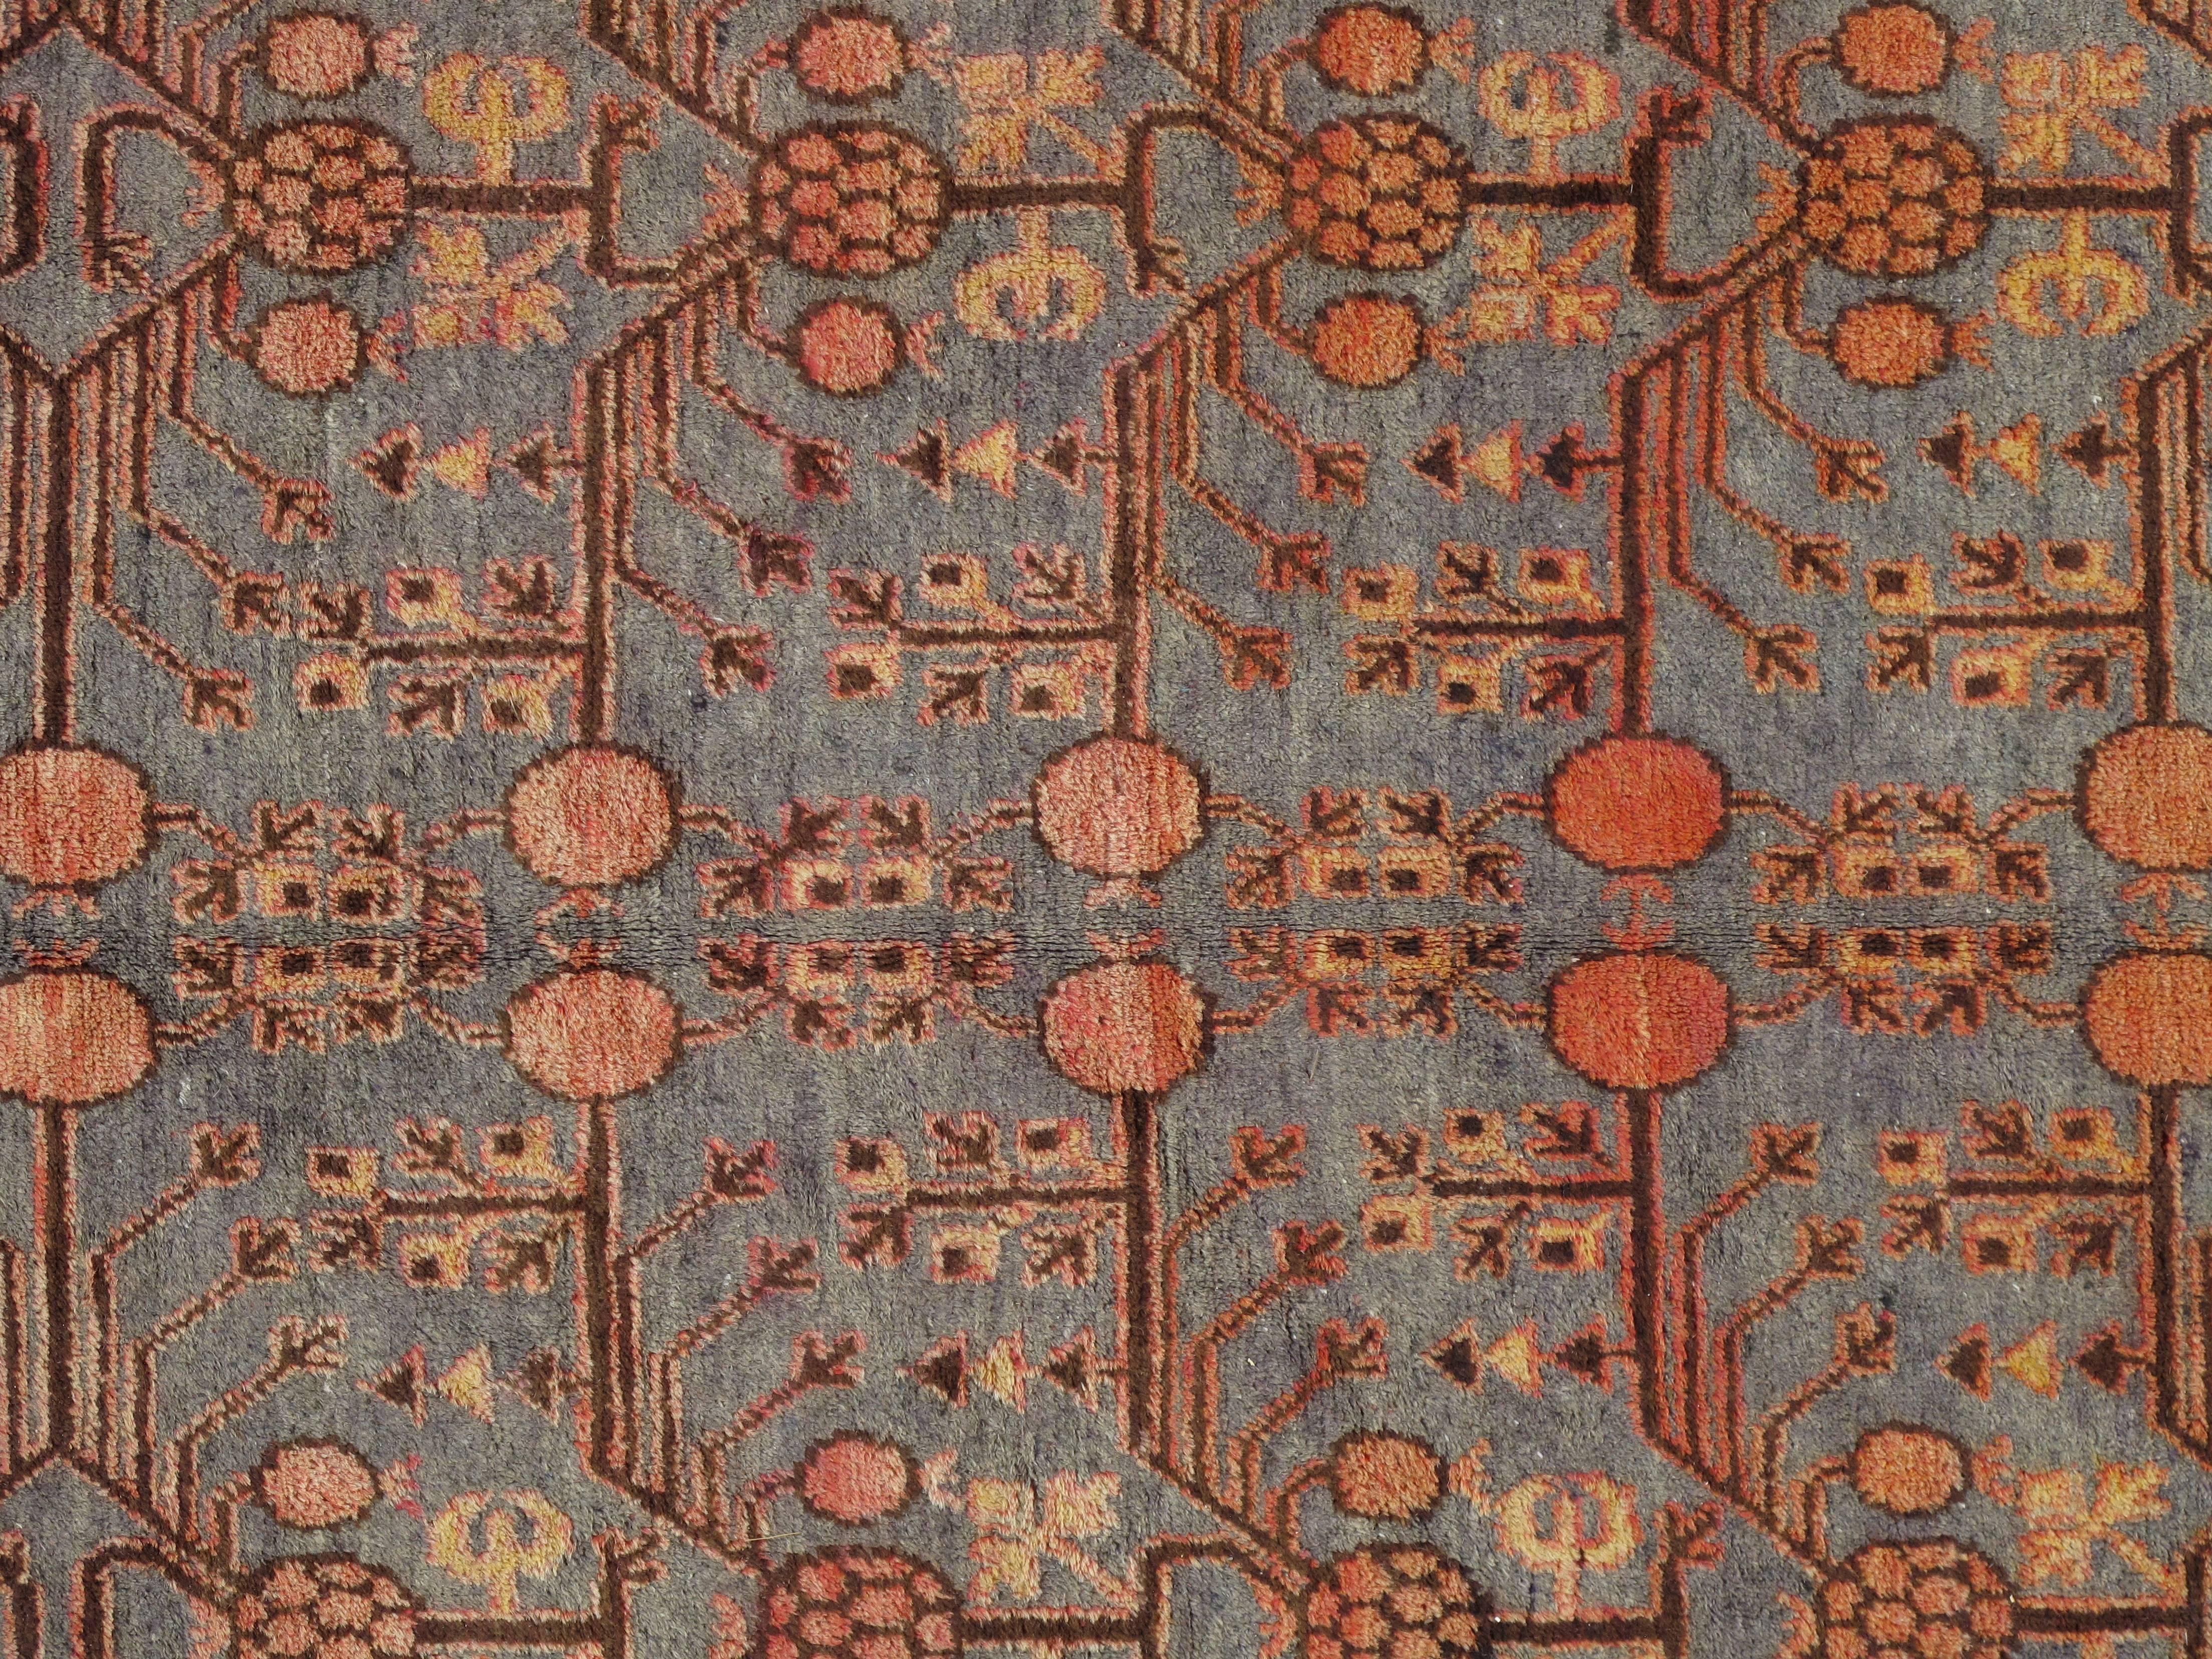 Dieser spektakuläre antike Teppich aus Khotan wurde in den 1920er Jahren gewebt und zeigt ein beispielhaftes Granatapfelmuster, das von traditionellen Bordüren umgeben ist, die den regionalen Stil von Ostturkestan verkörpern. Strahlende Wolken- und